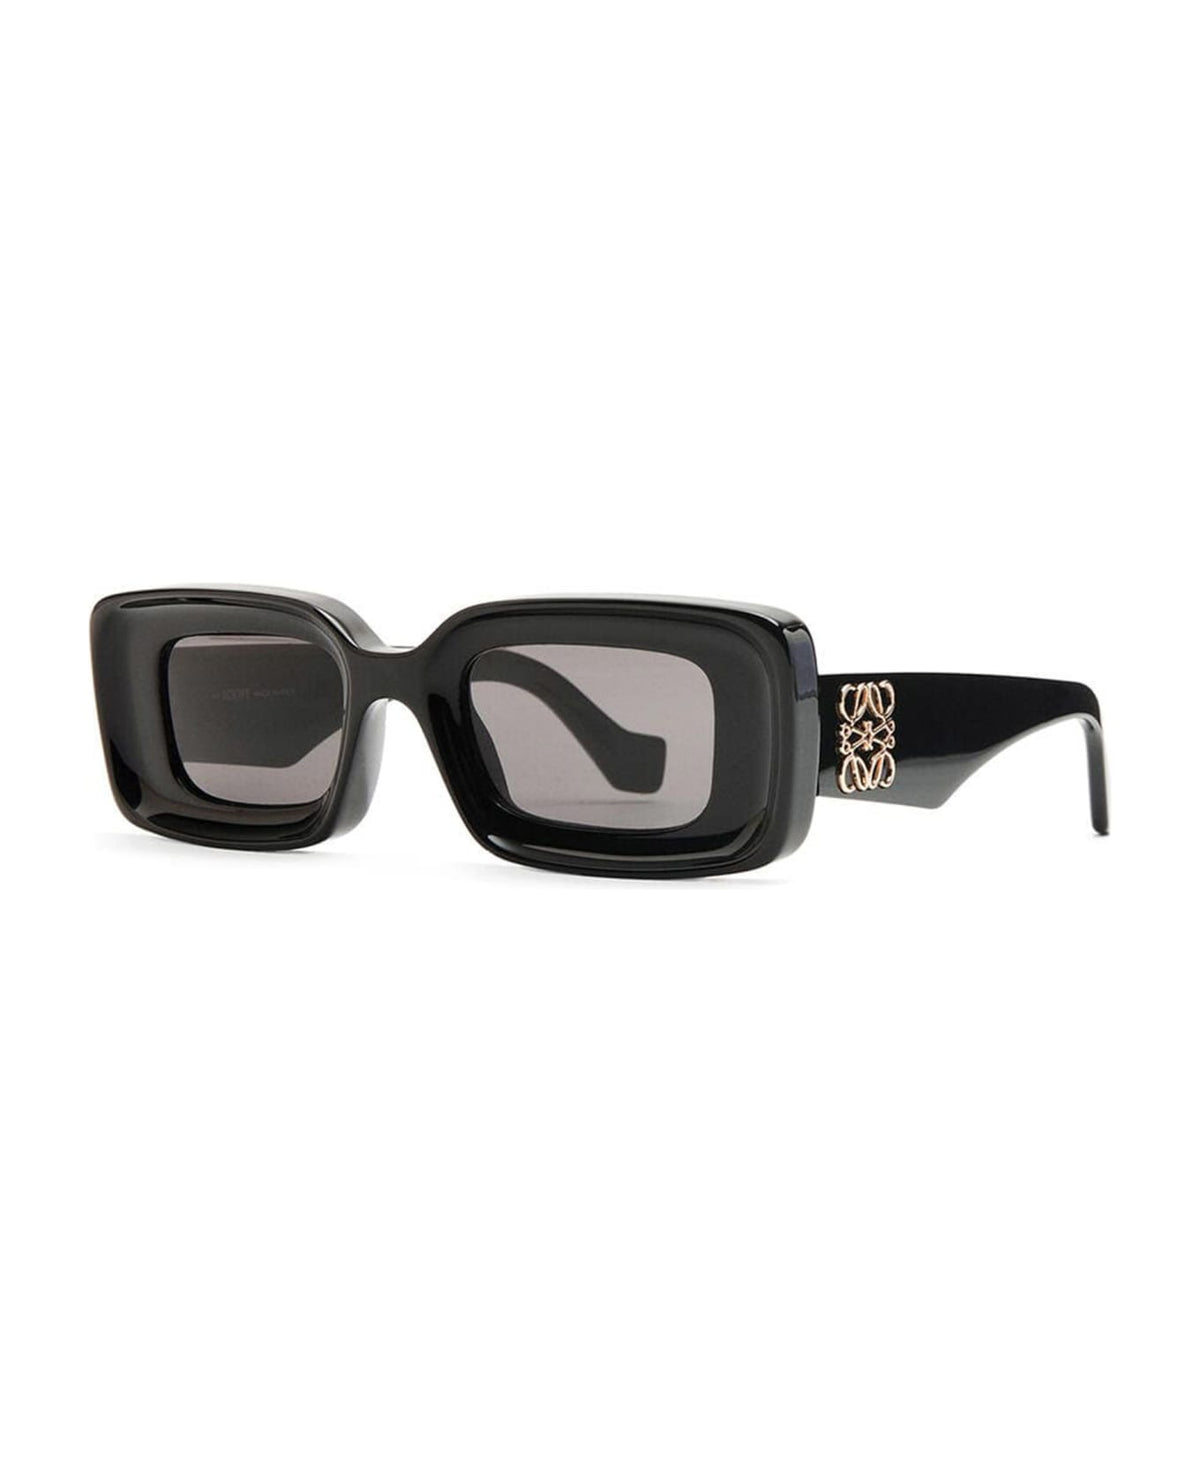 Lw40101i - Black Sunglasses